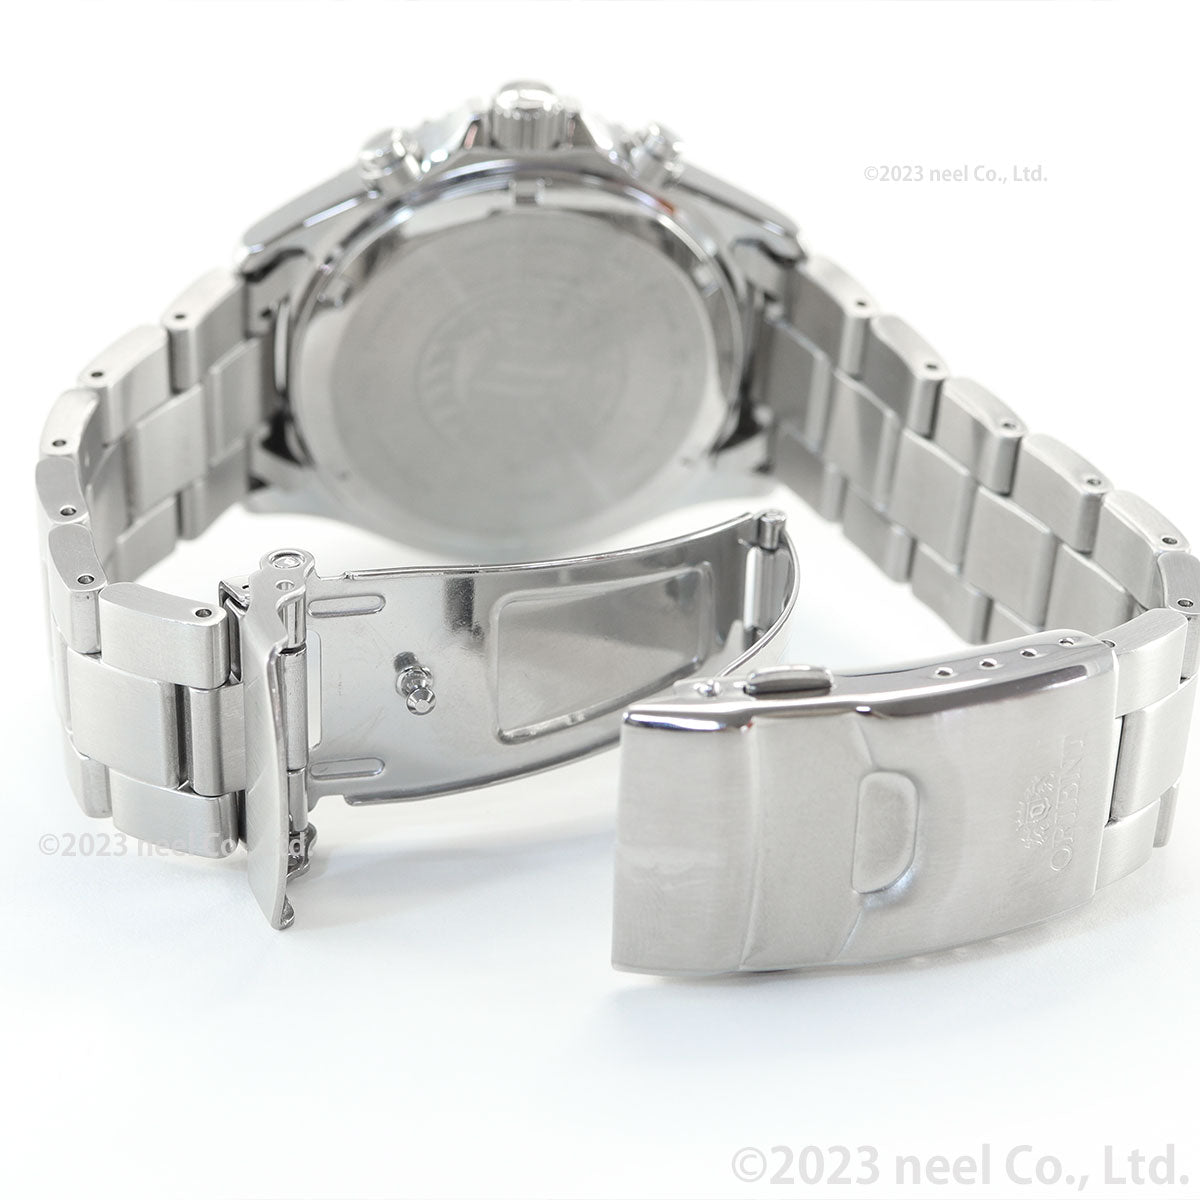 オリエント ORIENT スポーツ ソーラーパワード 腕時計 メンズ RN-TX0204E クロノグラフ マコ Mako